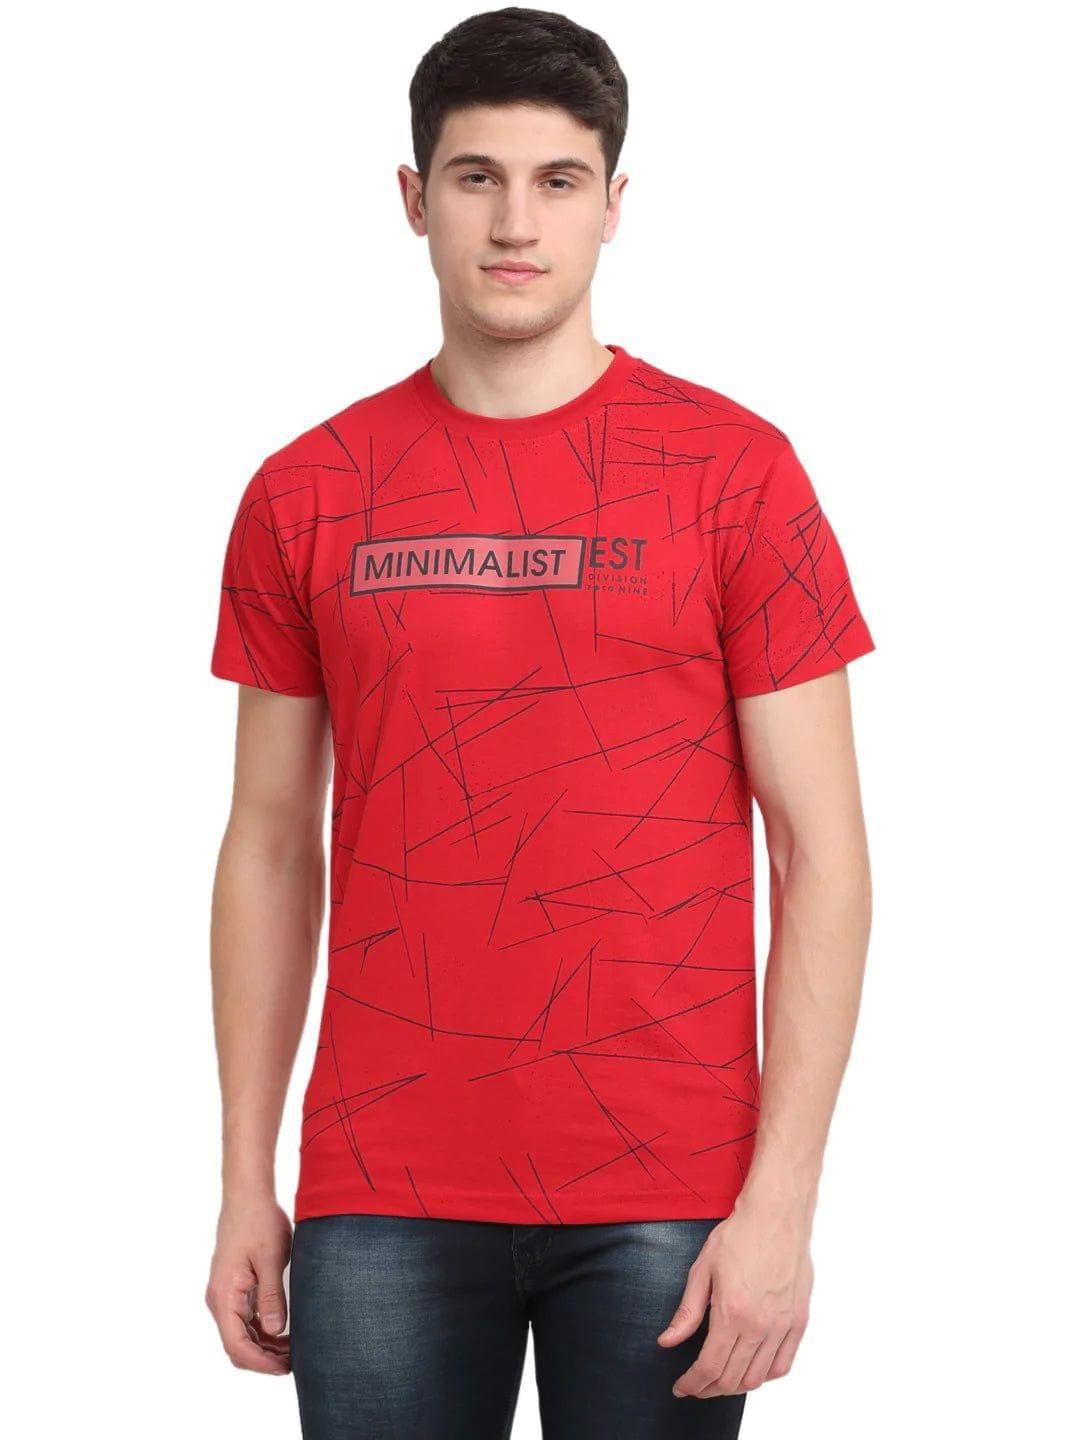 Rodamo  Men Red Printed Slim Fit T-shirt